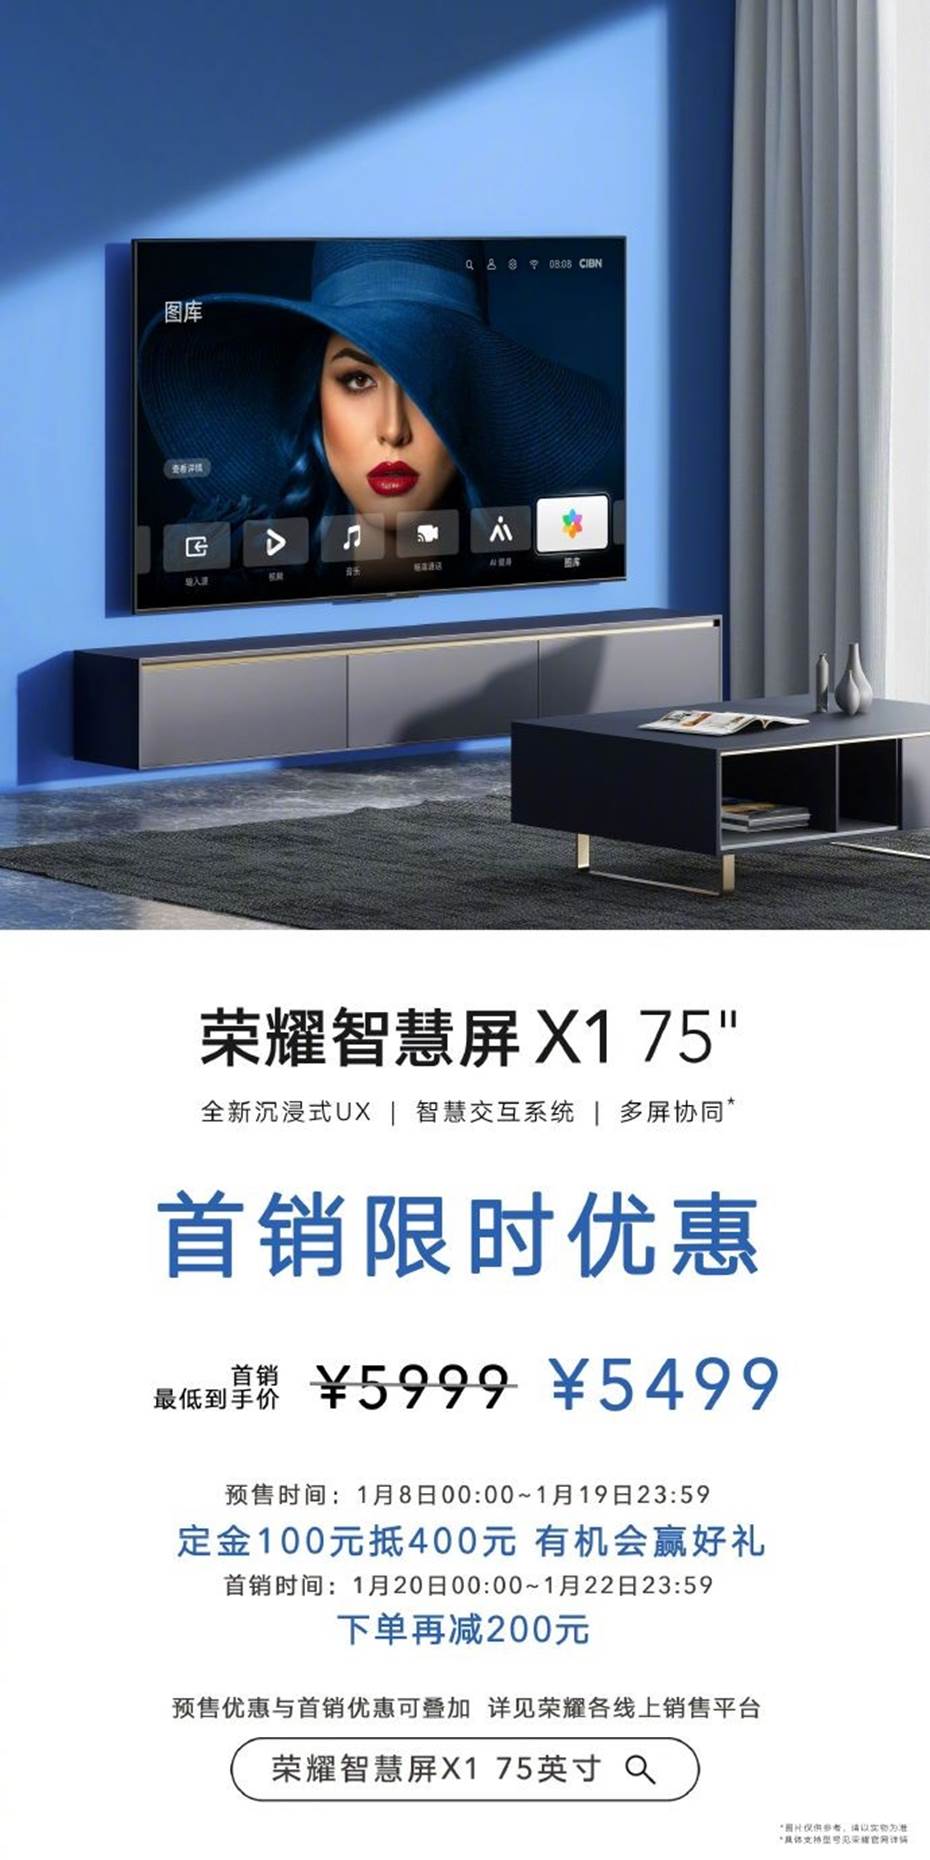 更大更美更智慧，荣耀智慧屏X1 75英寸正式推出拓宽产品线布局